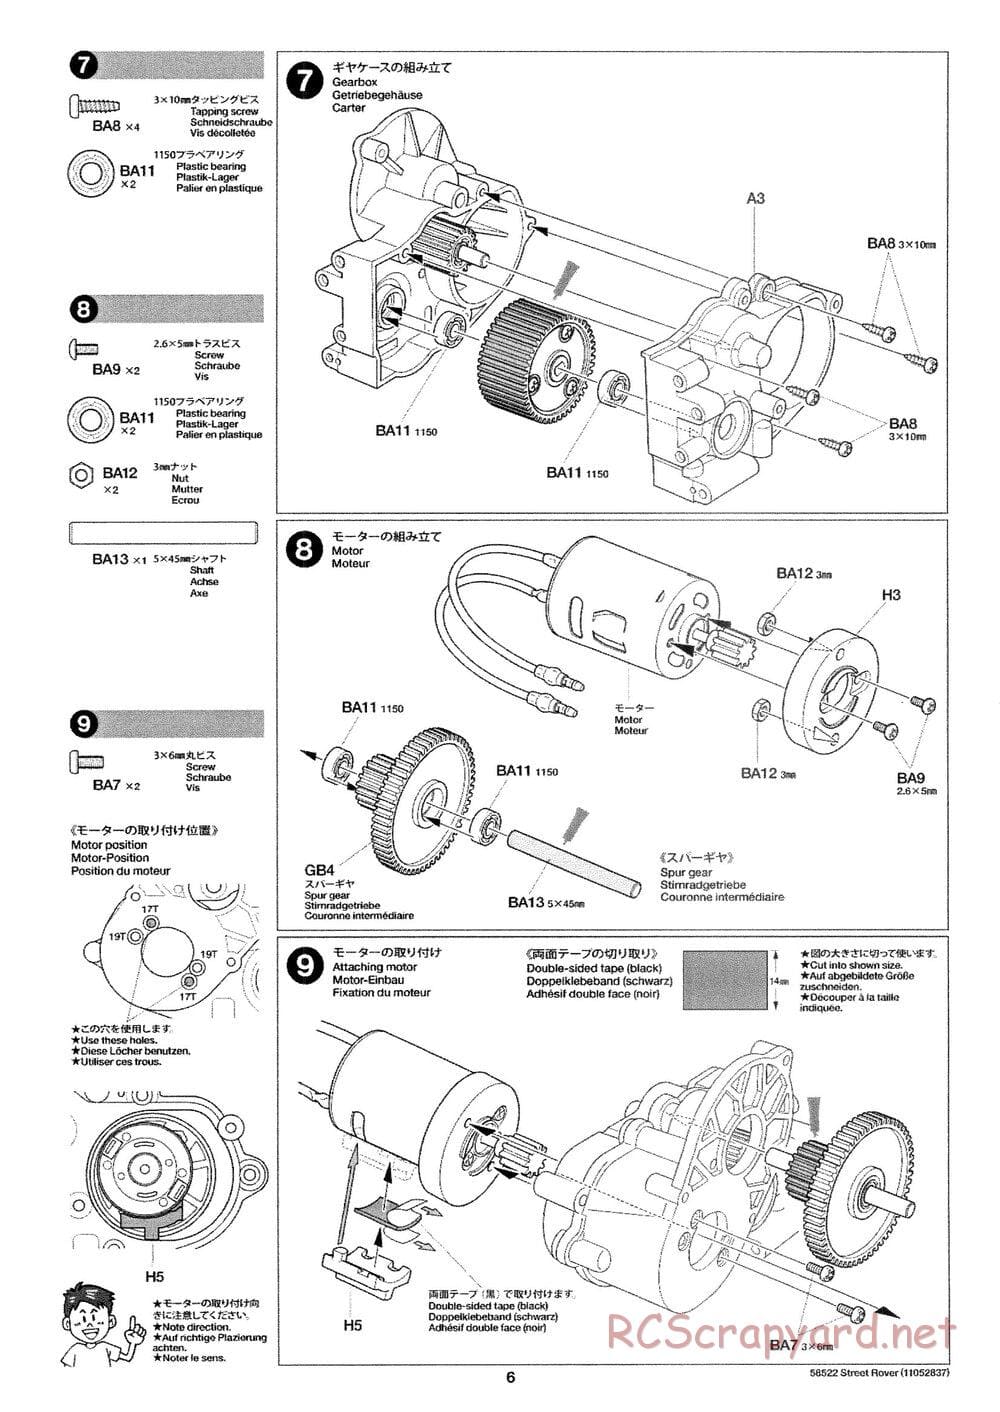 Tamiya - Street Rover Chassis - Manual - Page 7